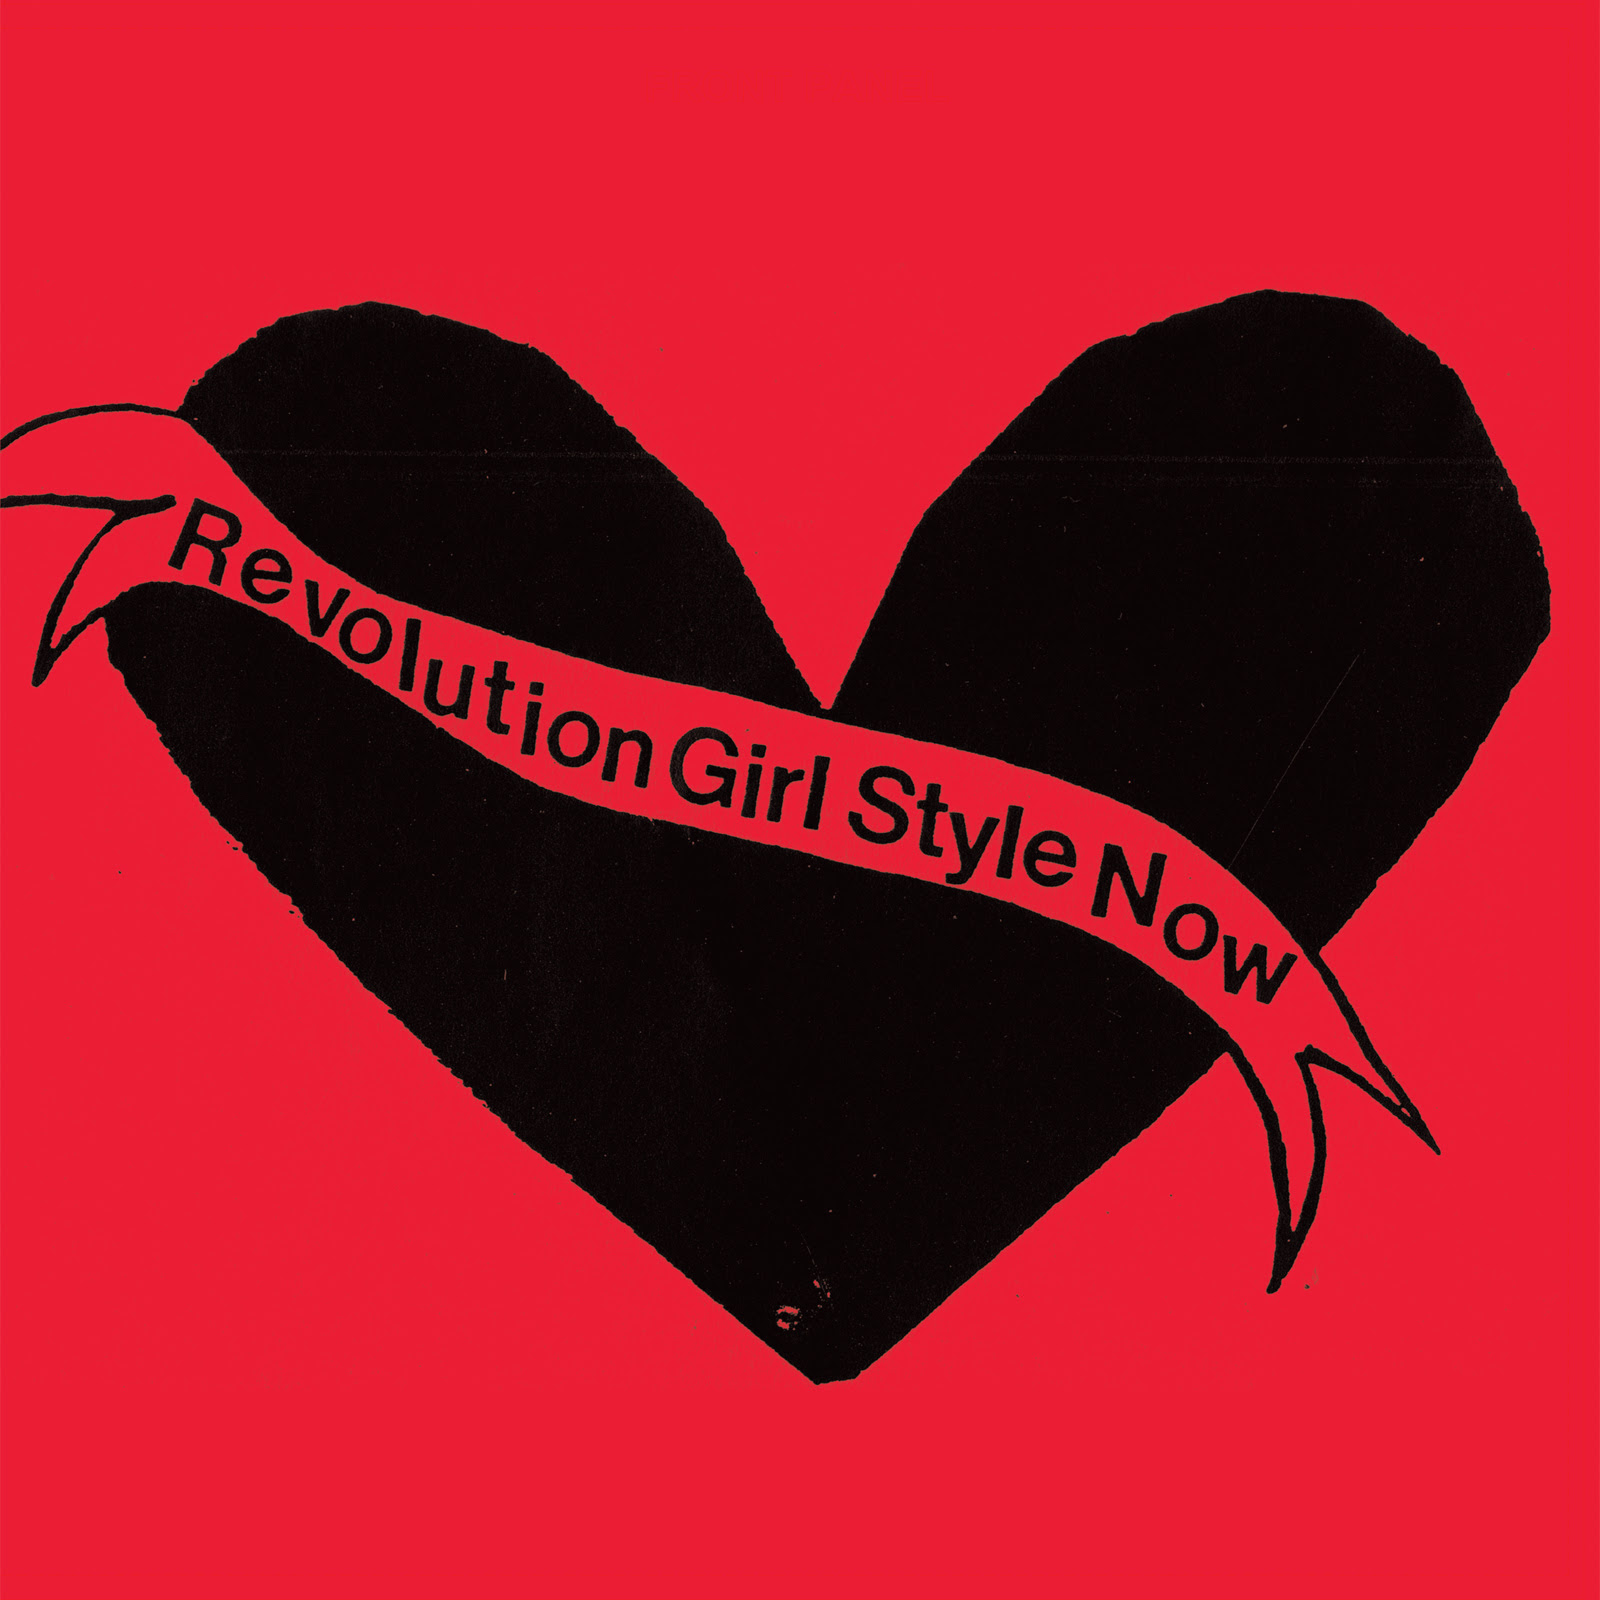 Revolution girl